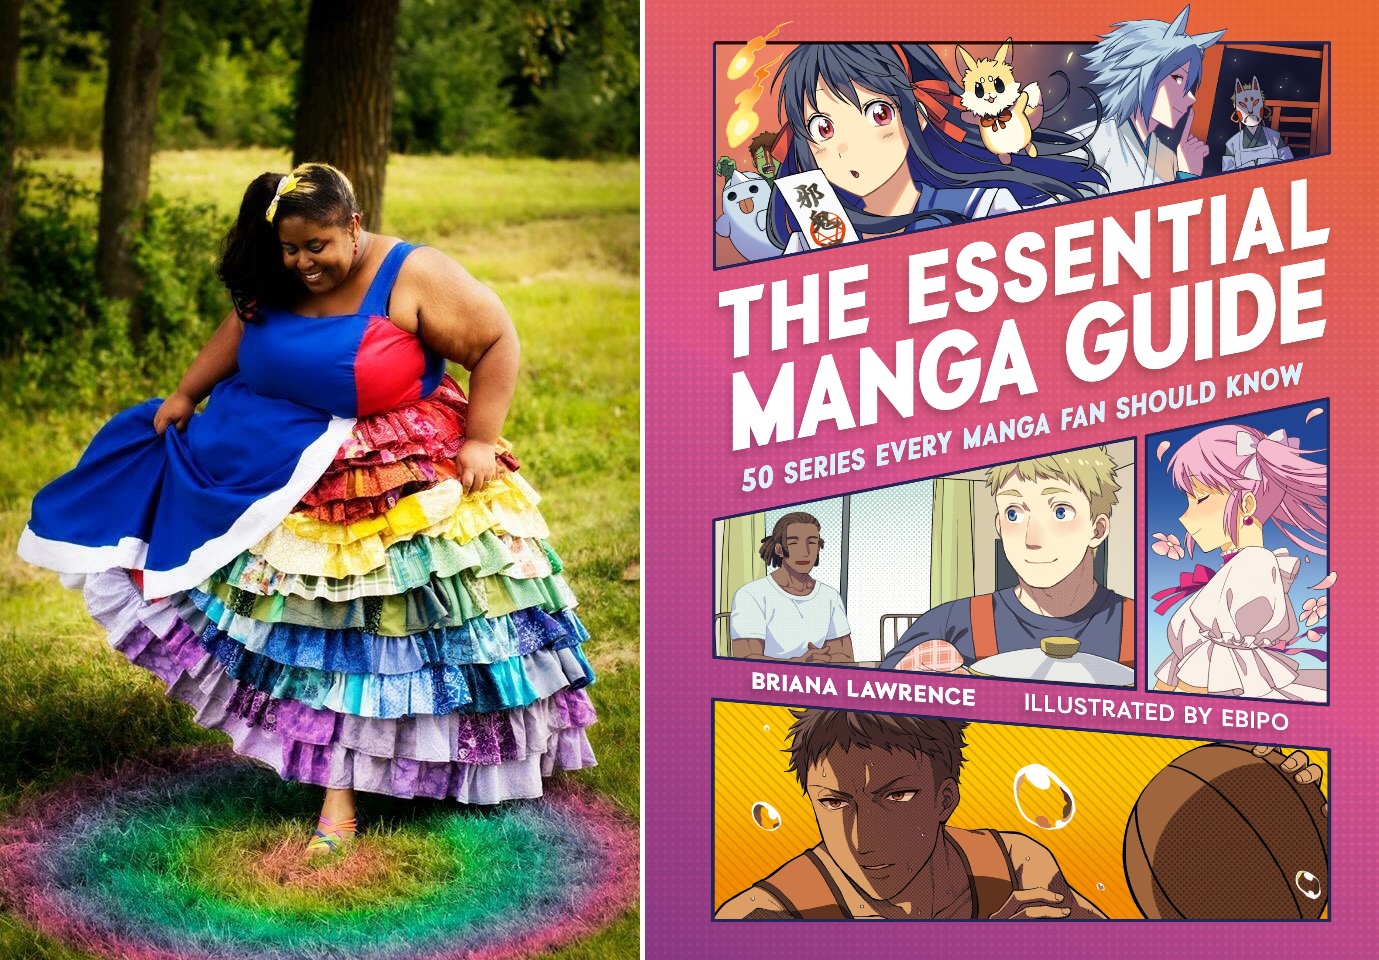 Le guide essentiel du manga s’adresse à tout le monde, pas seulement à Otaku